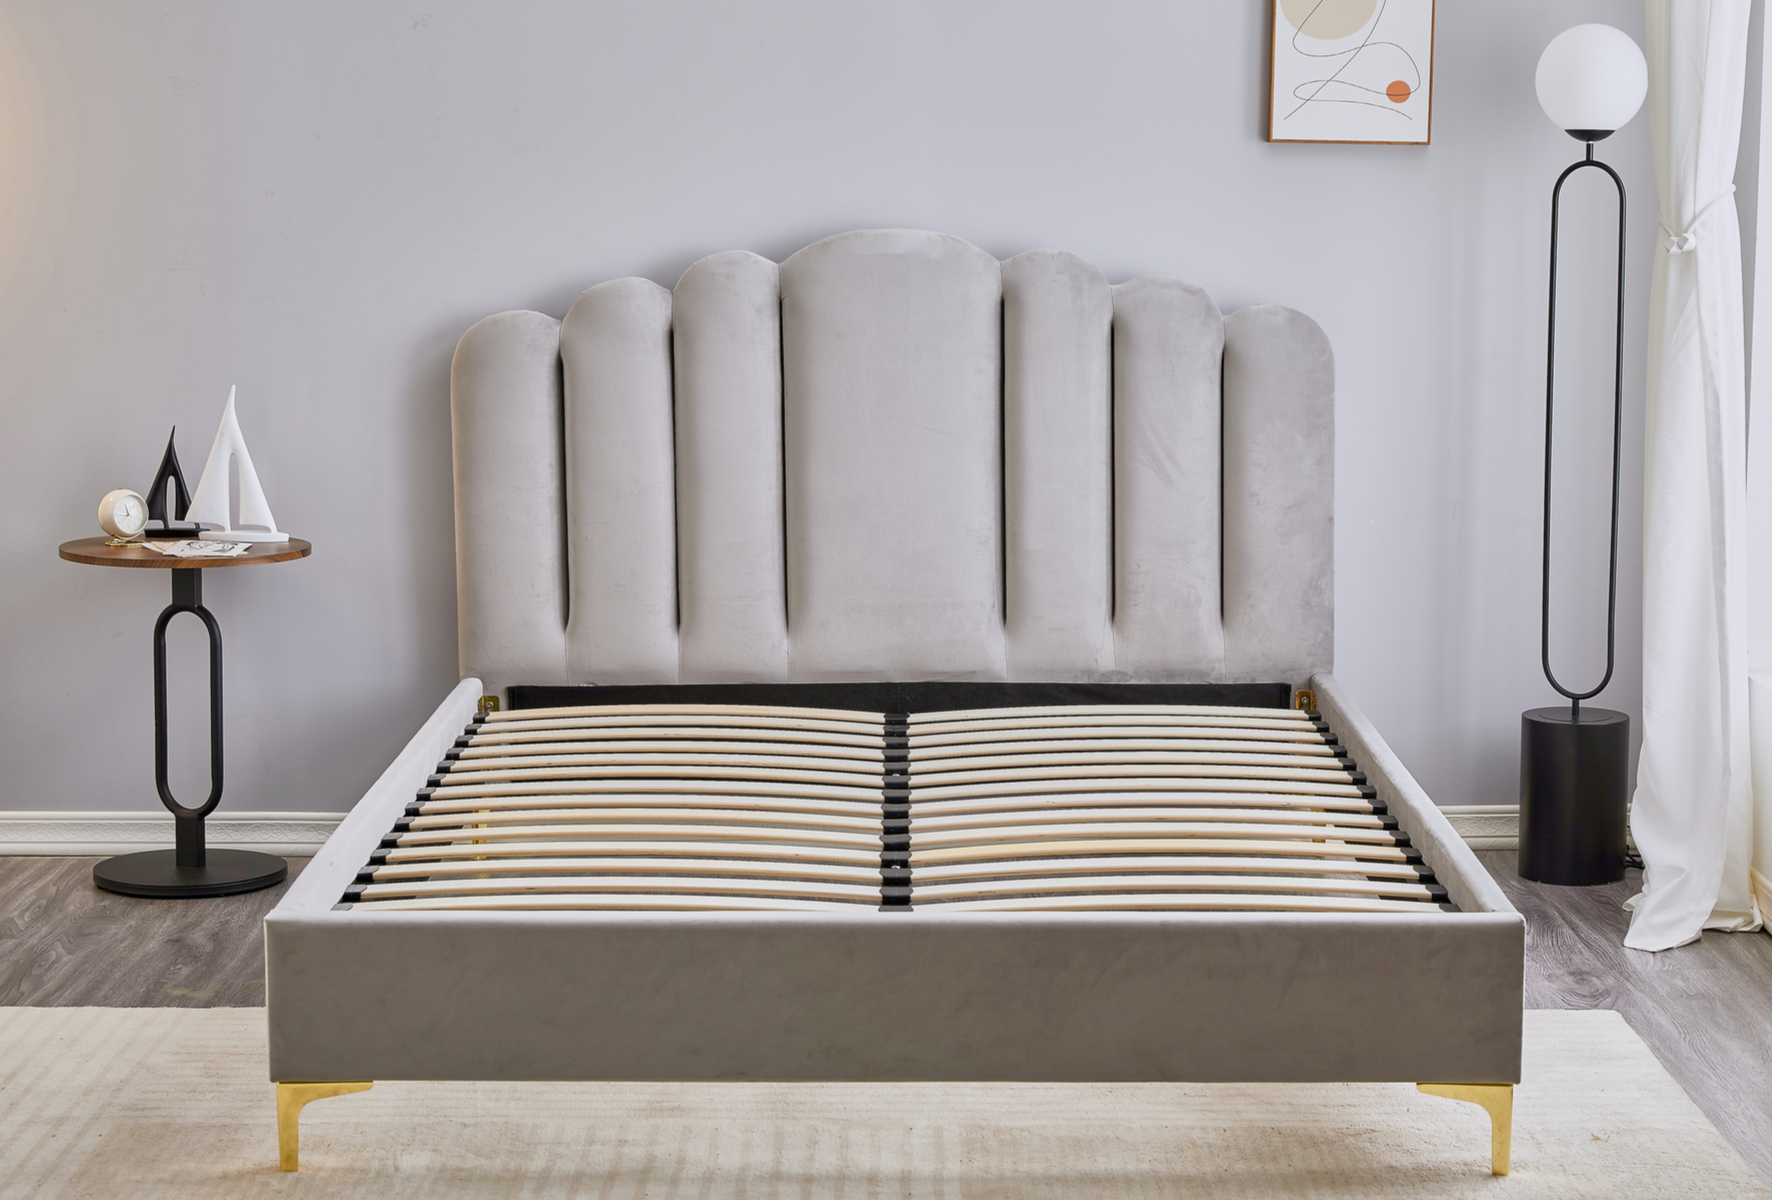 Light Grey Velvet Bed Frame